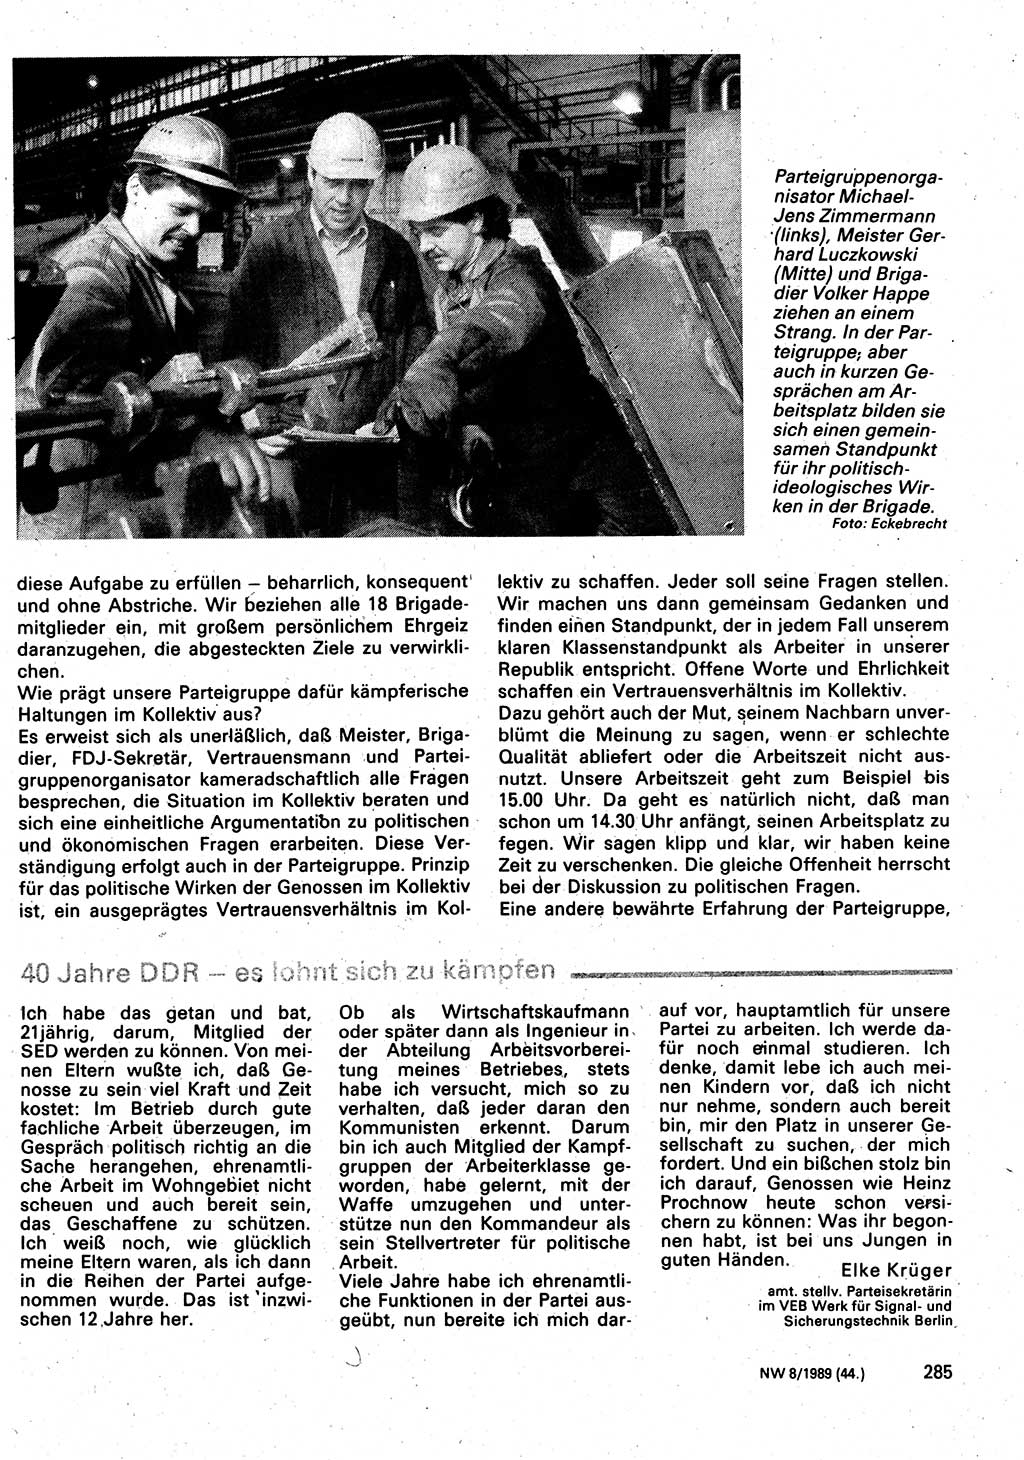 Neuer Weg (NW), Organ des Zentralkomitees (ZK) der SED (Sozialistische Einheitspartei Deutschlands) für Fragen des Parteilebens, 44. Jahrgang [Deutsche Demokratische Republik (DDR)] 1989, Seite 285 (NW ZK SED DDR 1989, S. 285)